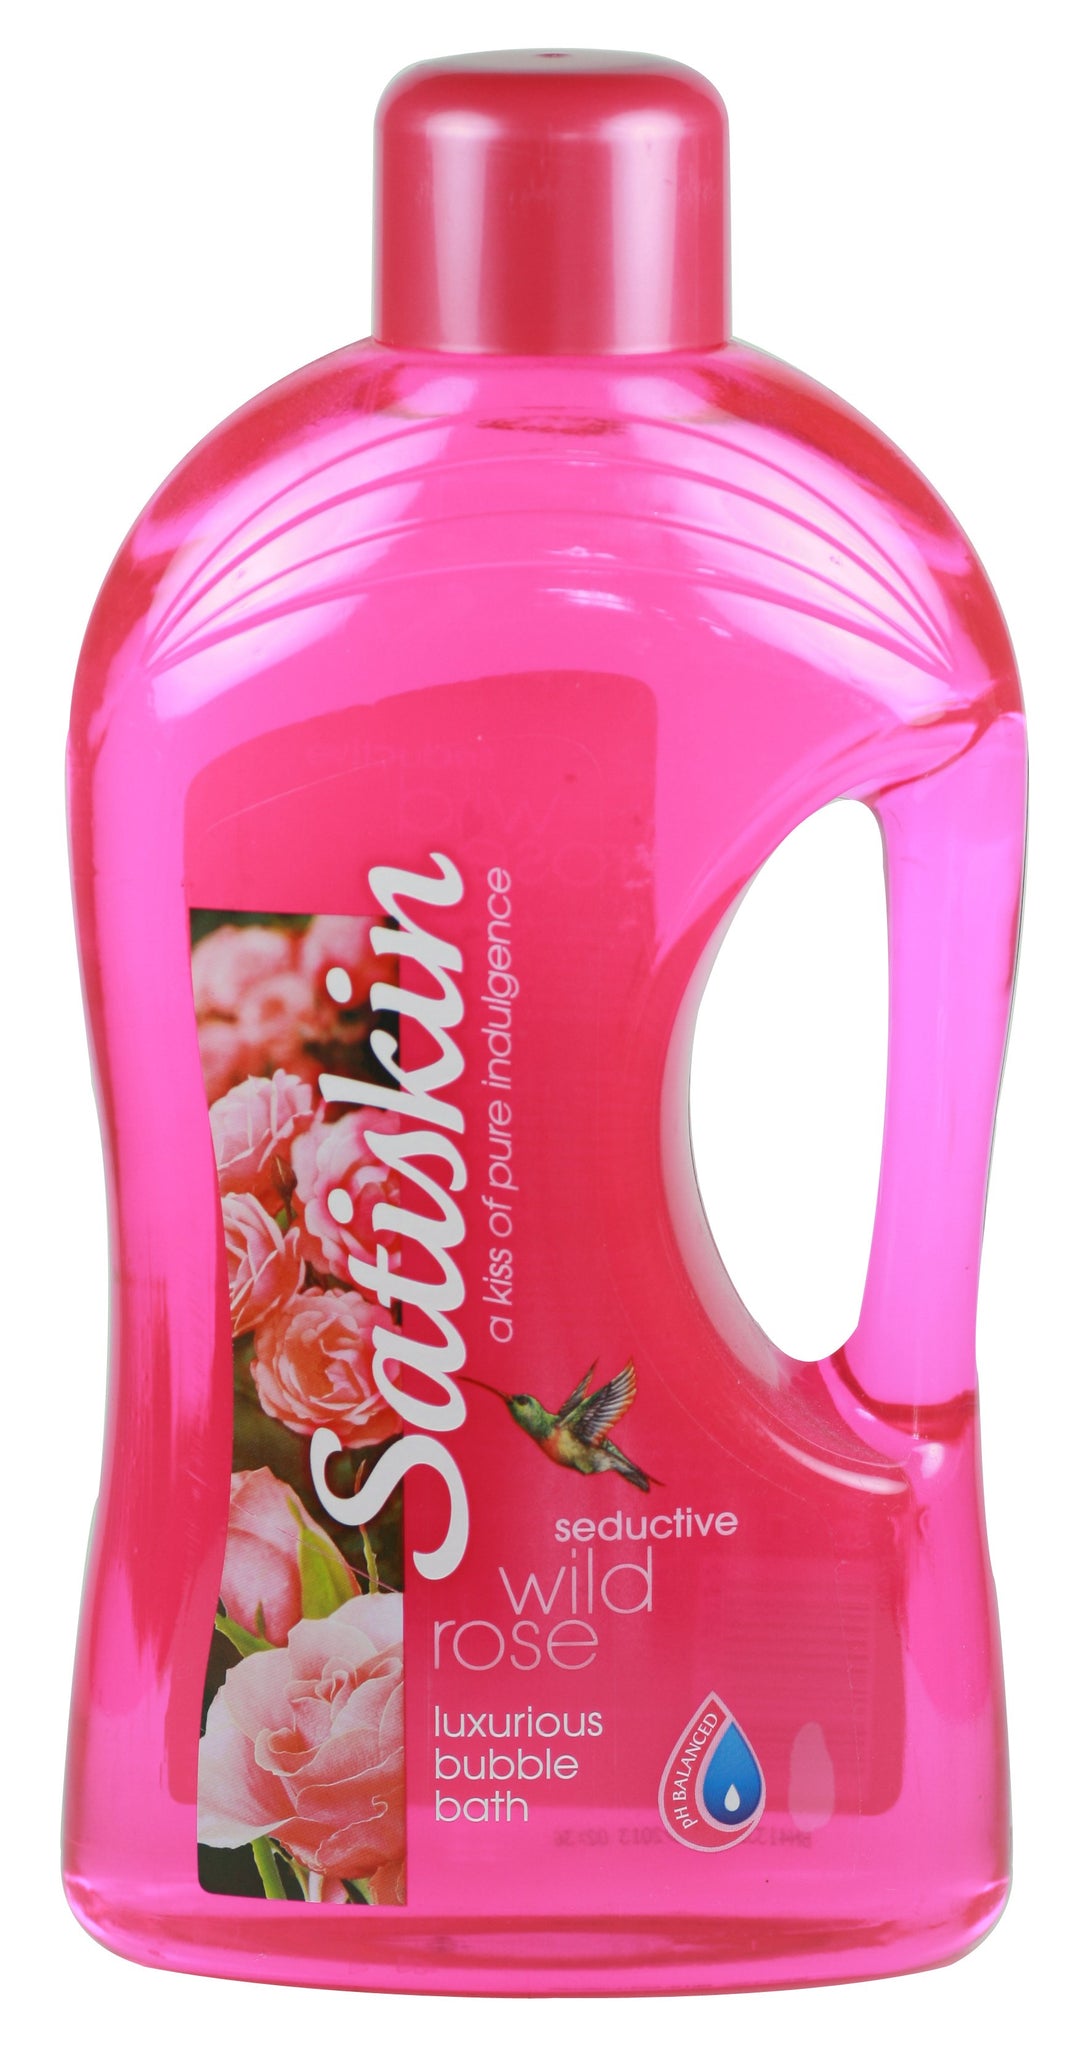 Satiskin Bubble Bath - Wild Rose - 2 litre